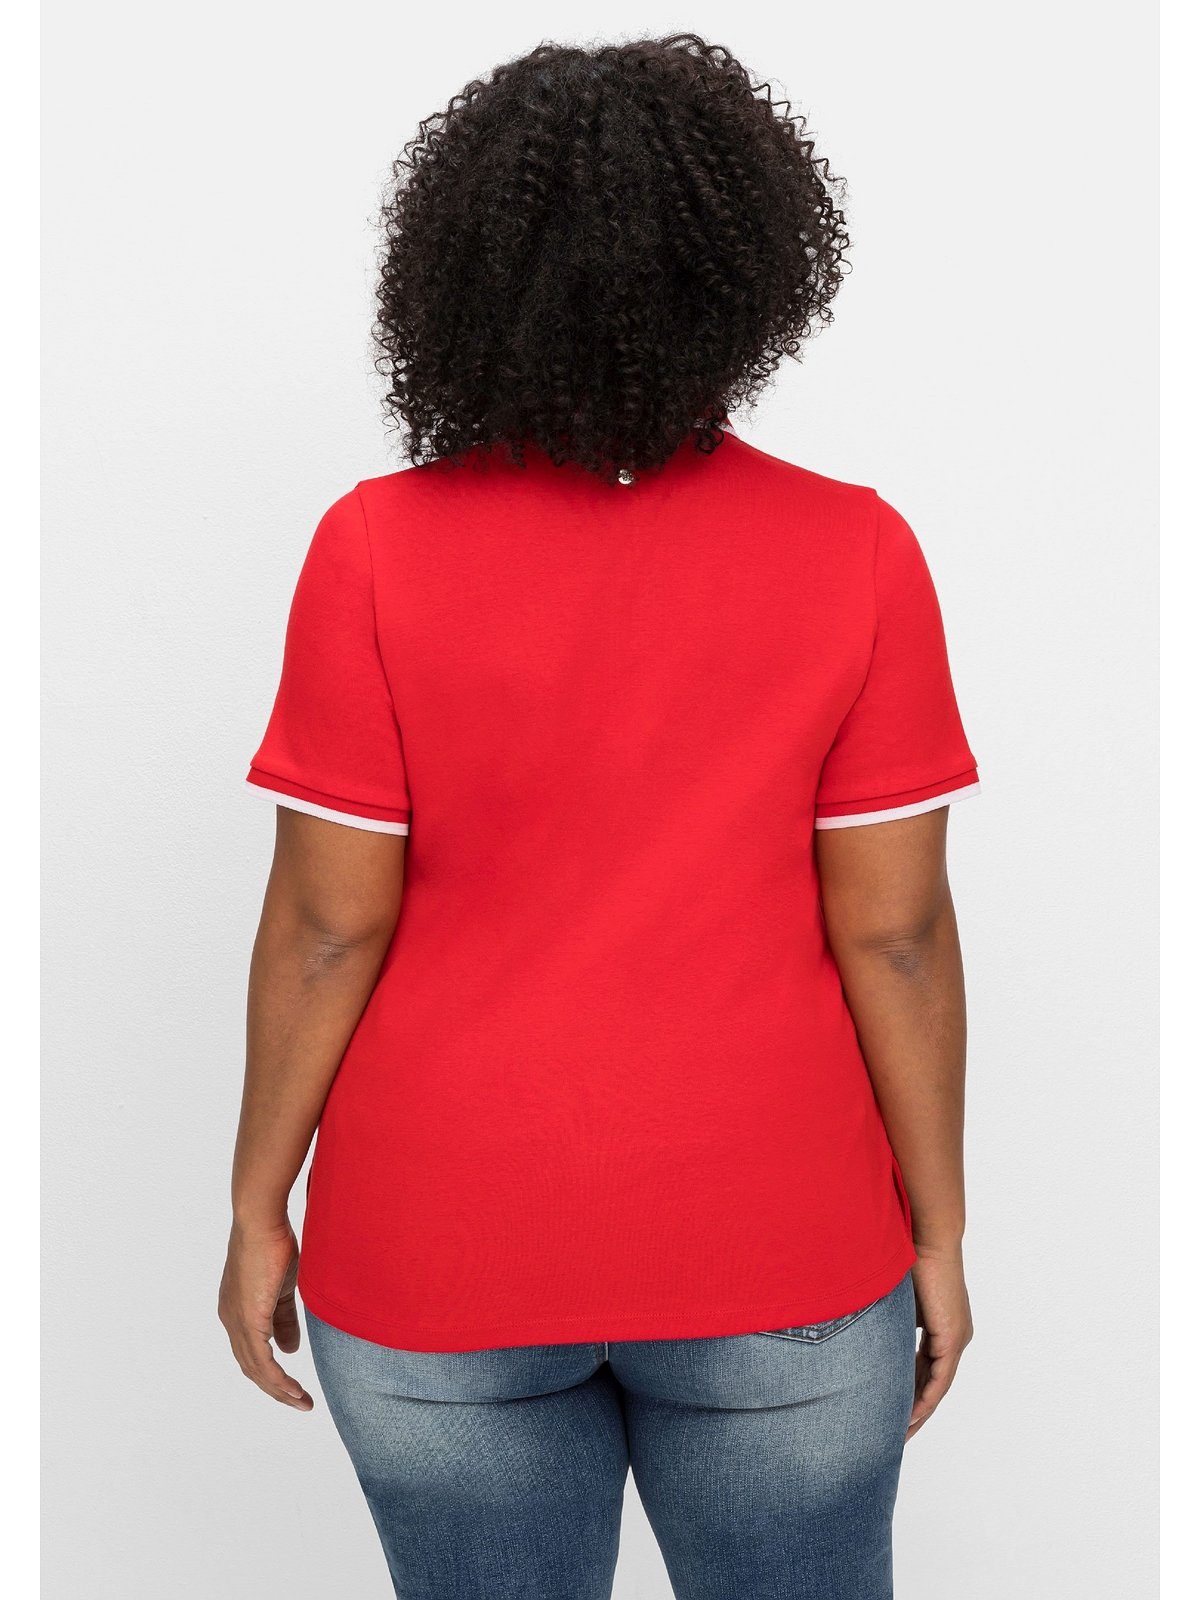 Sheego T-Shirt Große Größen mit leicht Kontrastkanten, tailliert